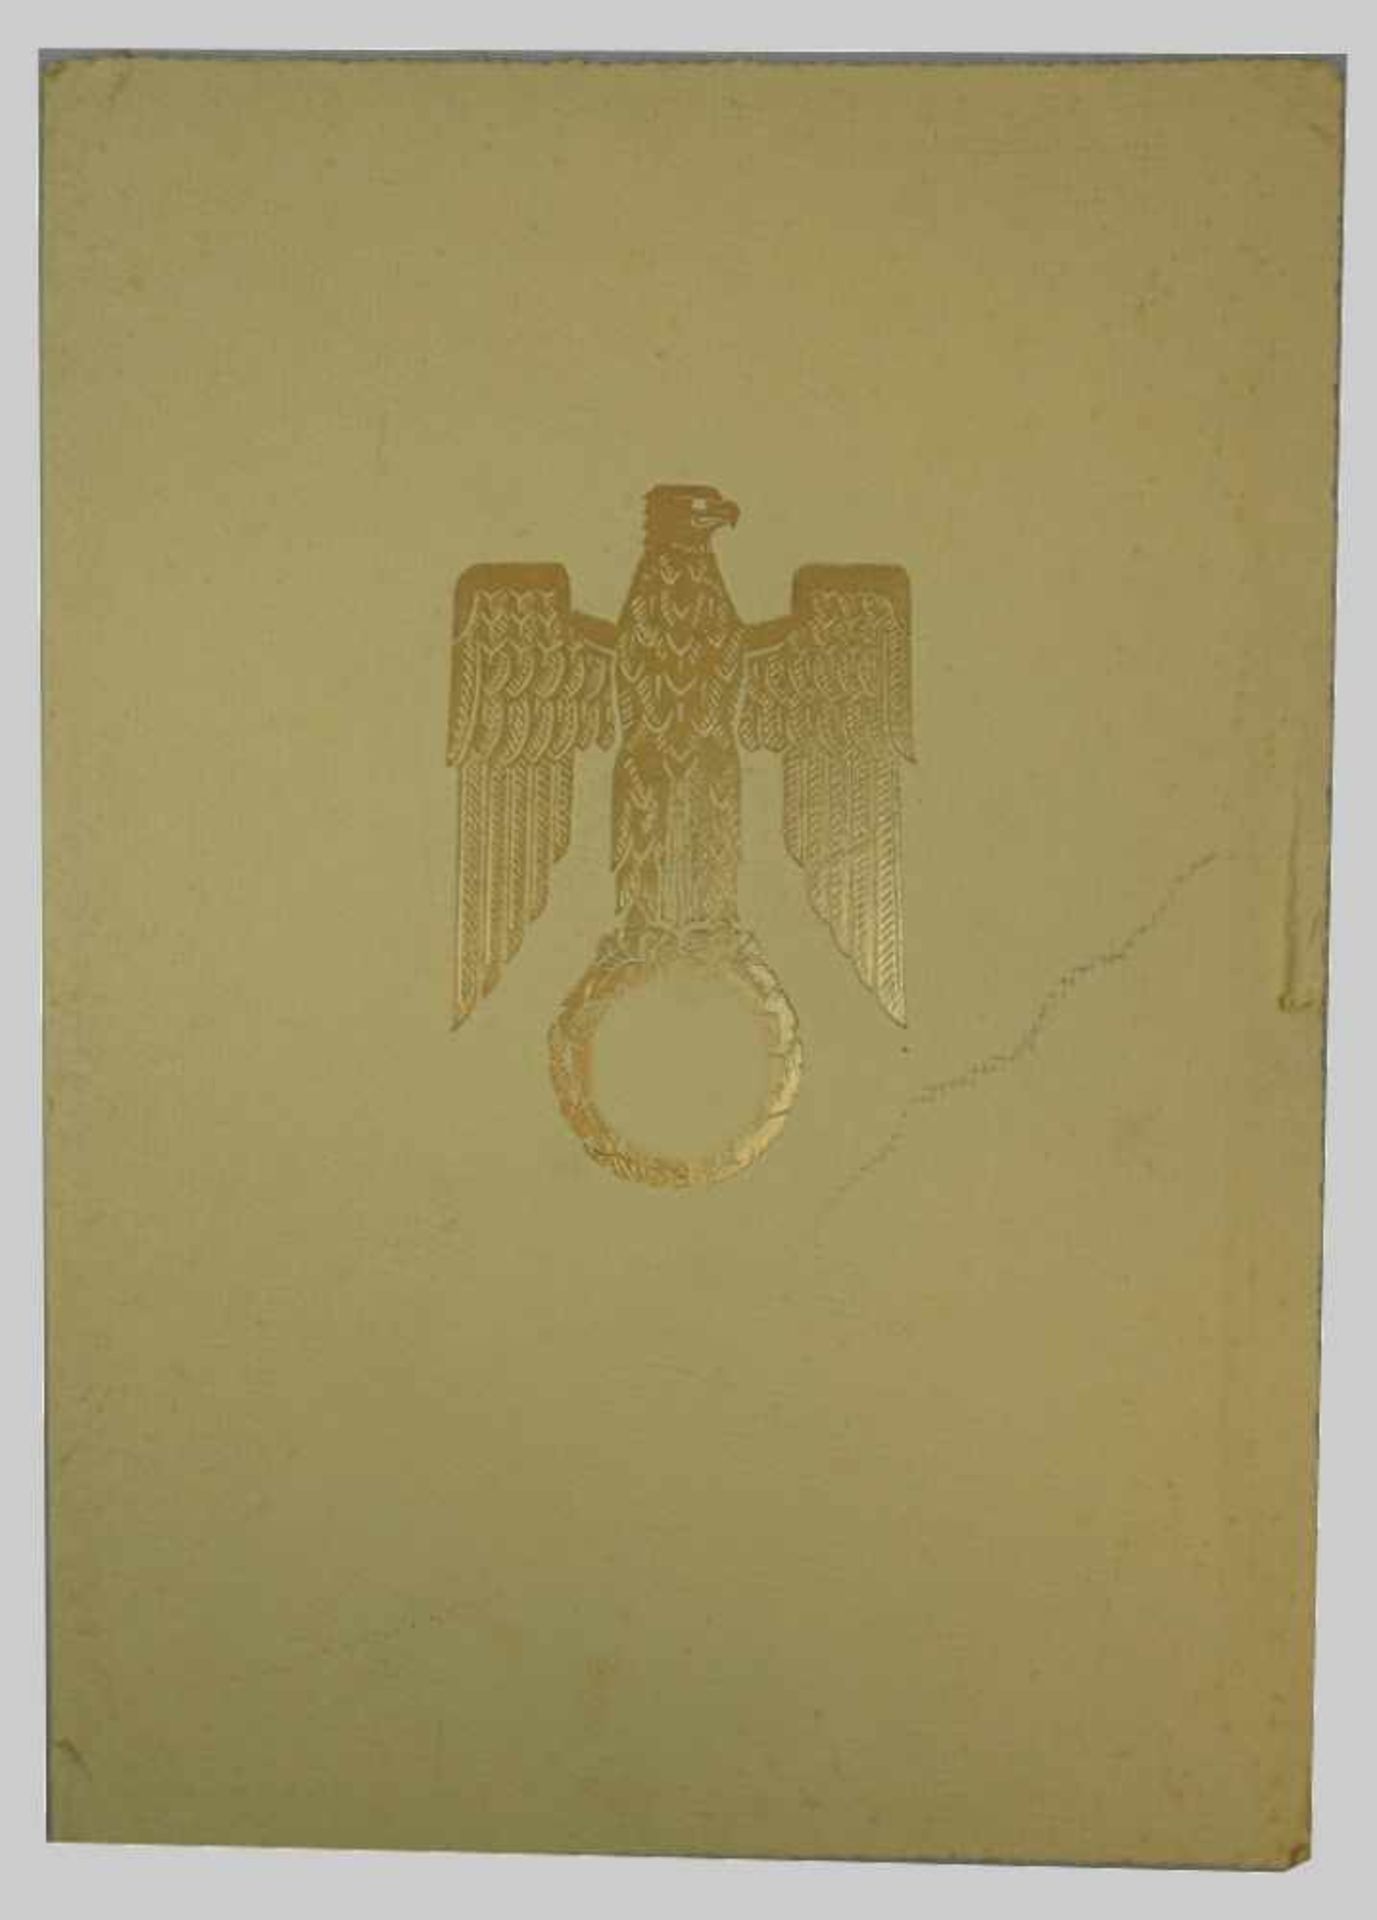 1 Konv. Dokumente/Urkunden 3. Reich u.a.:"Beförderung zum Major z.D." dat. 1941 mit Unterschrift u. - Bild 2 aus 2